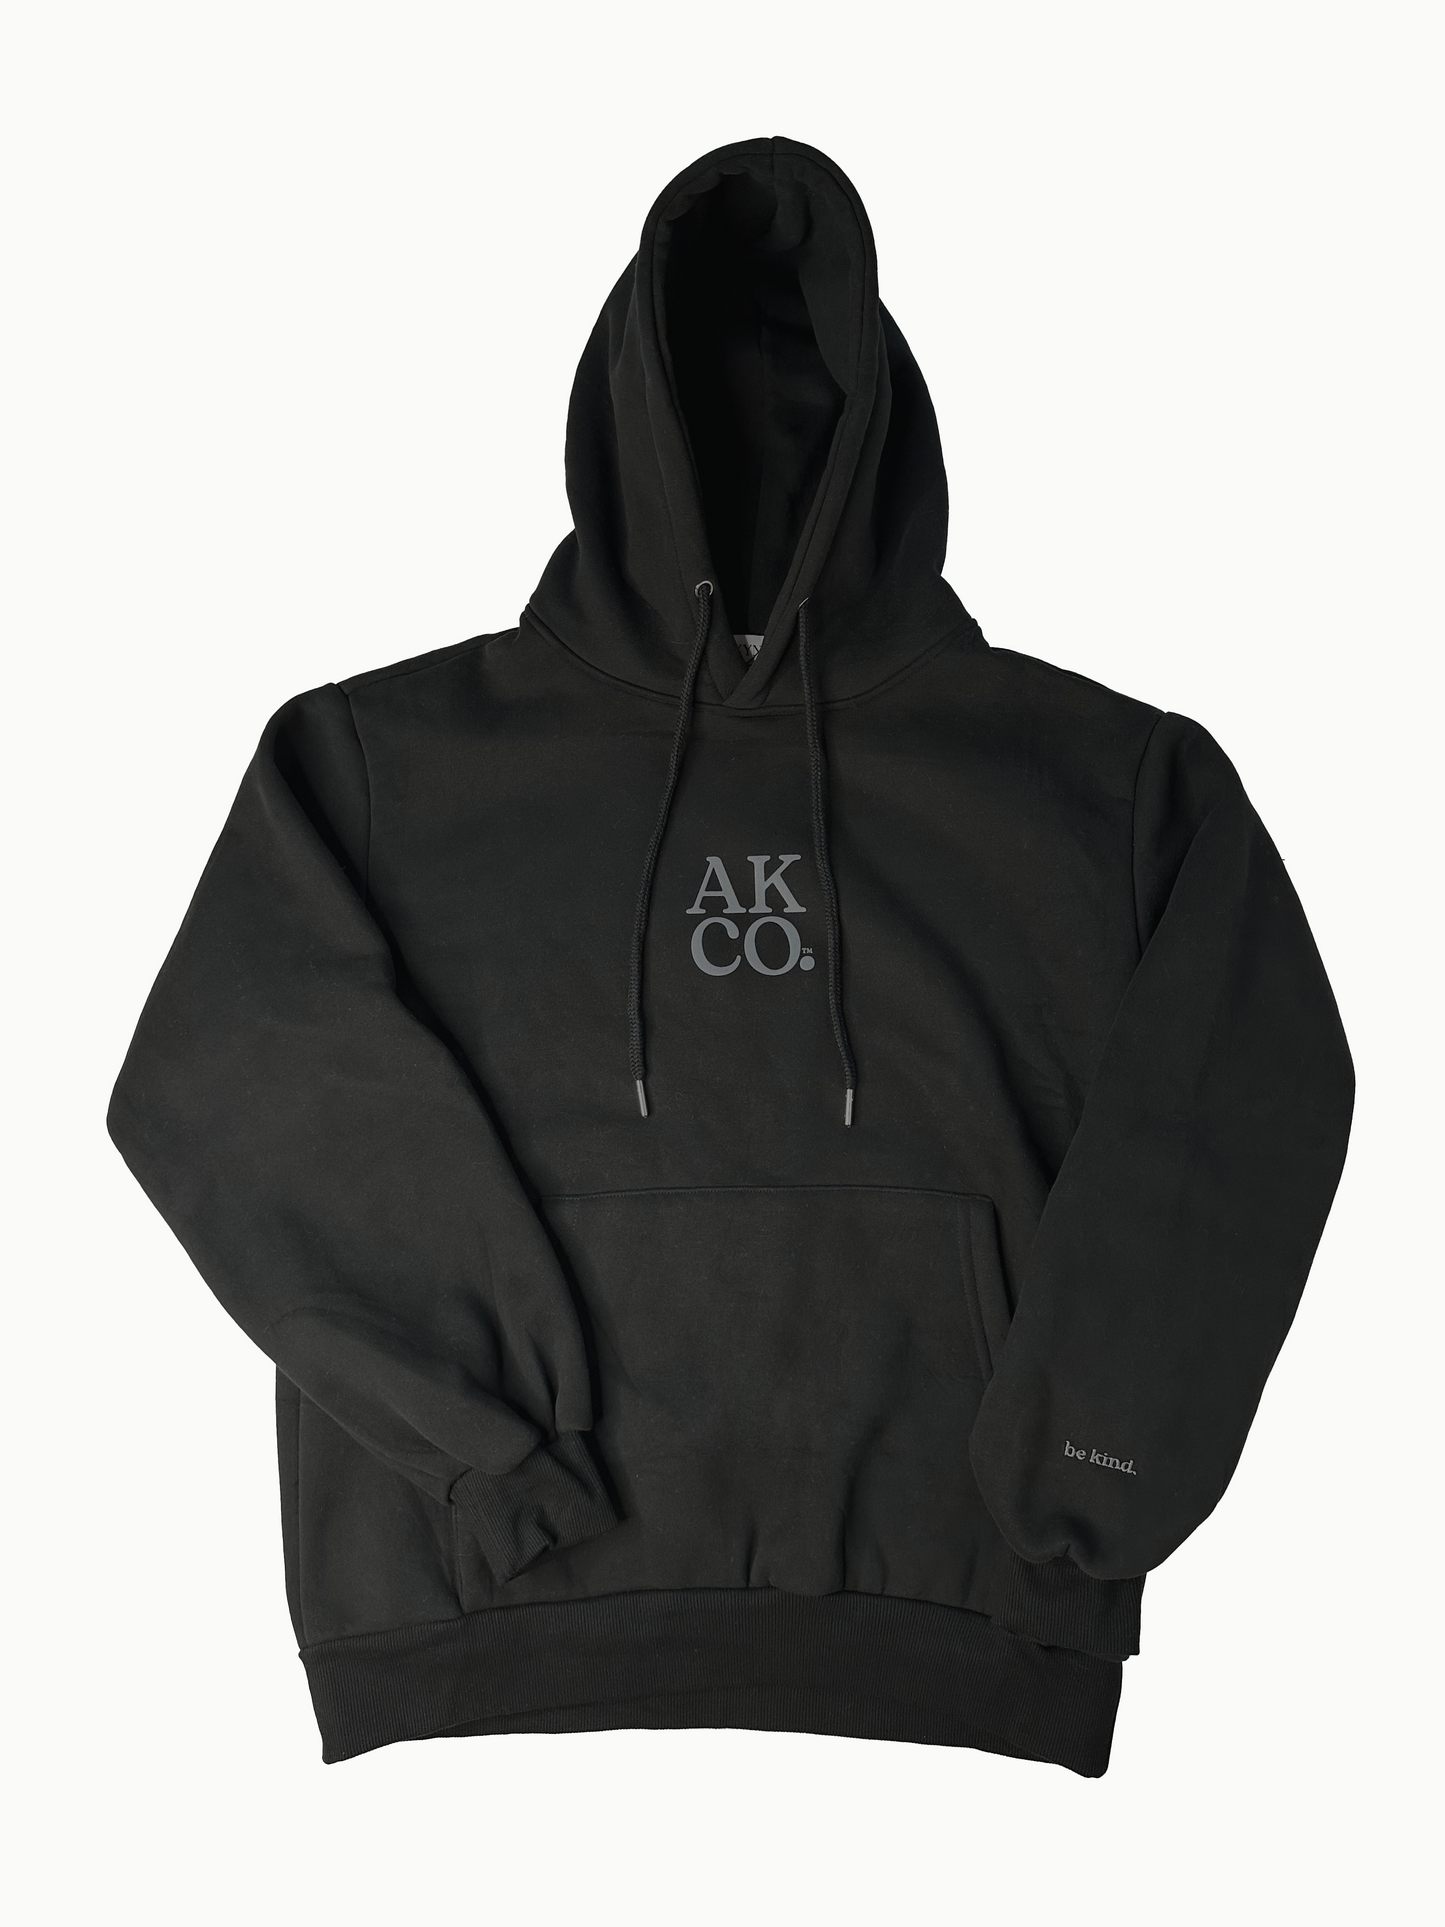 AKCO sueded black hoodie